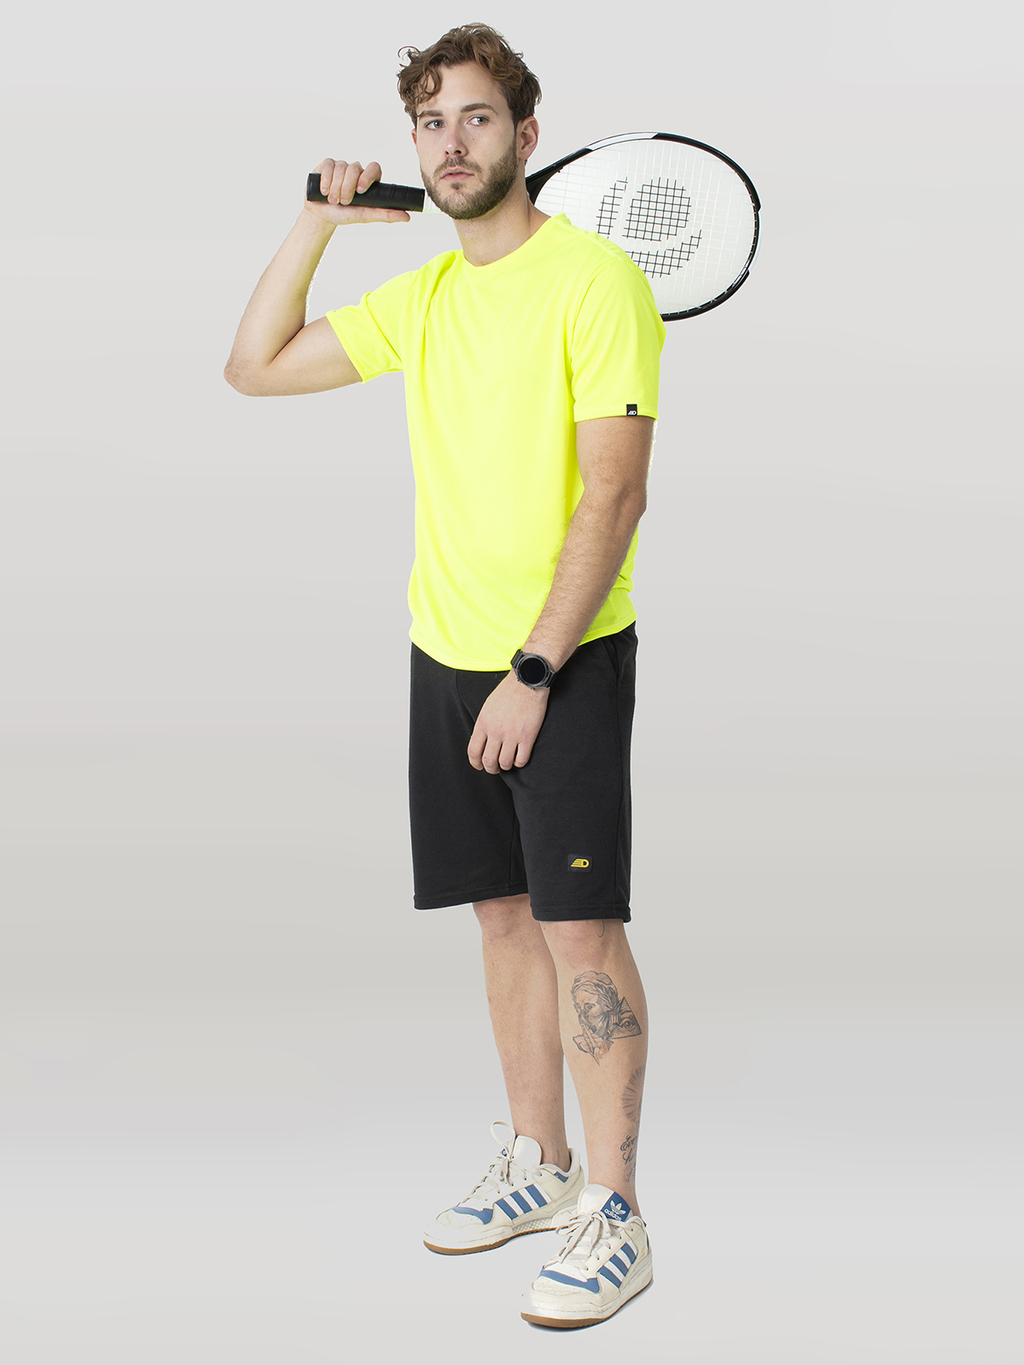 Camiseta Dry Fit masculina esportiva e para academia várias cores